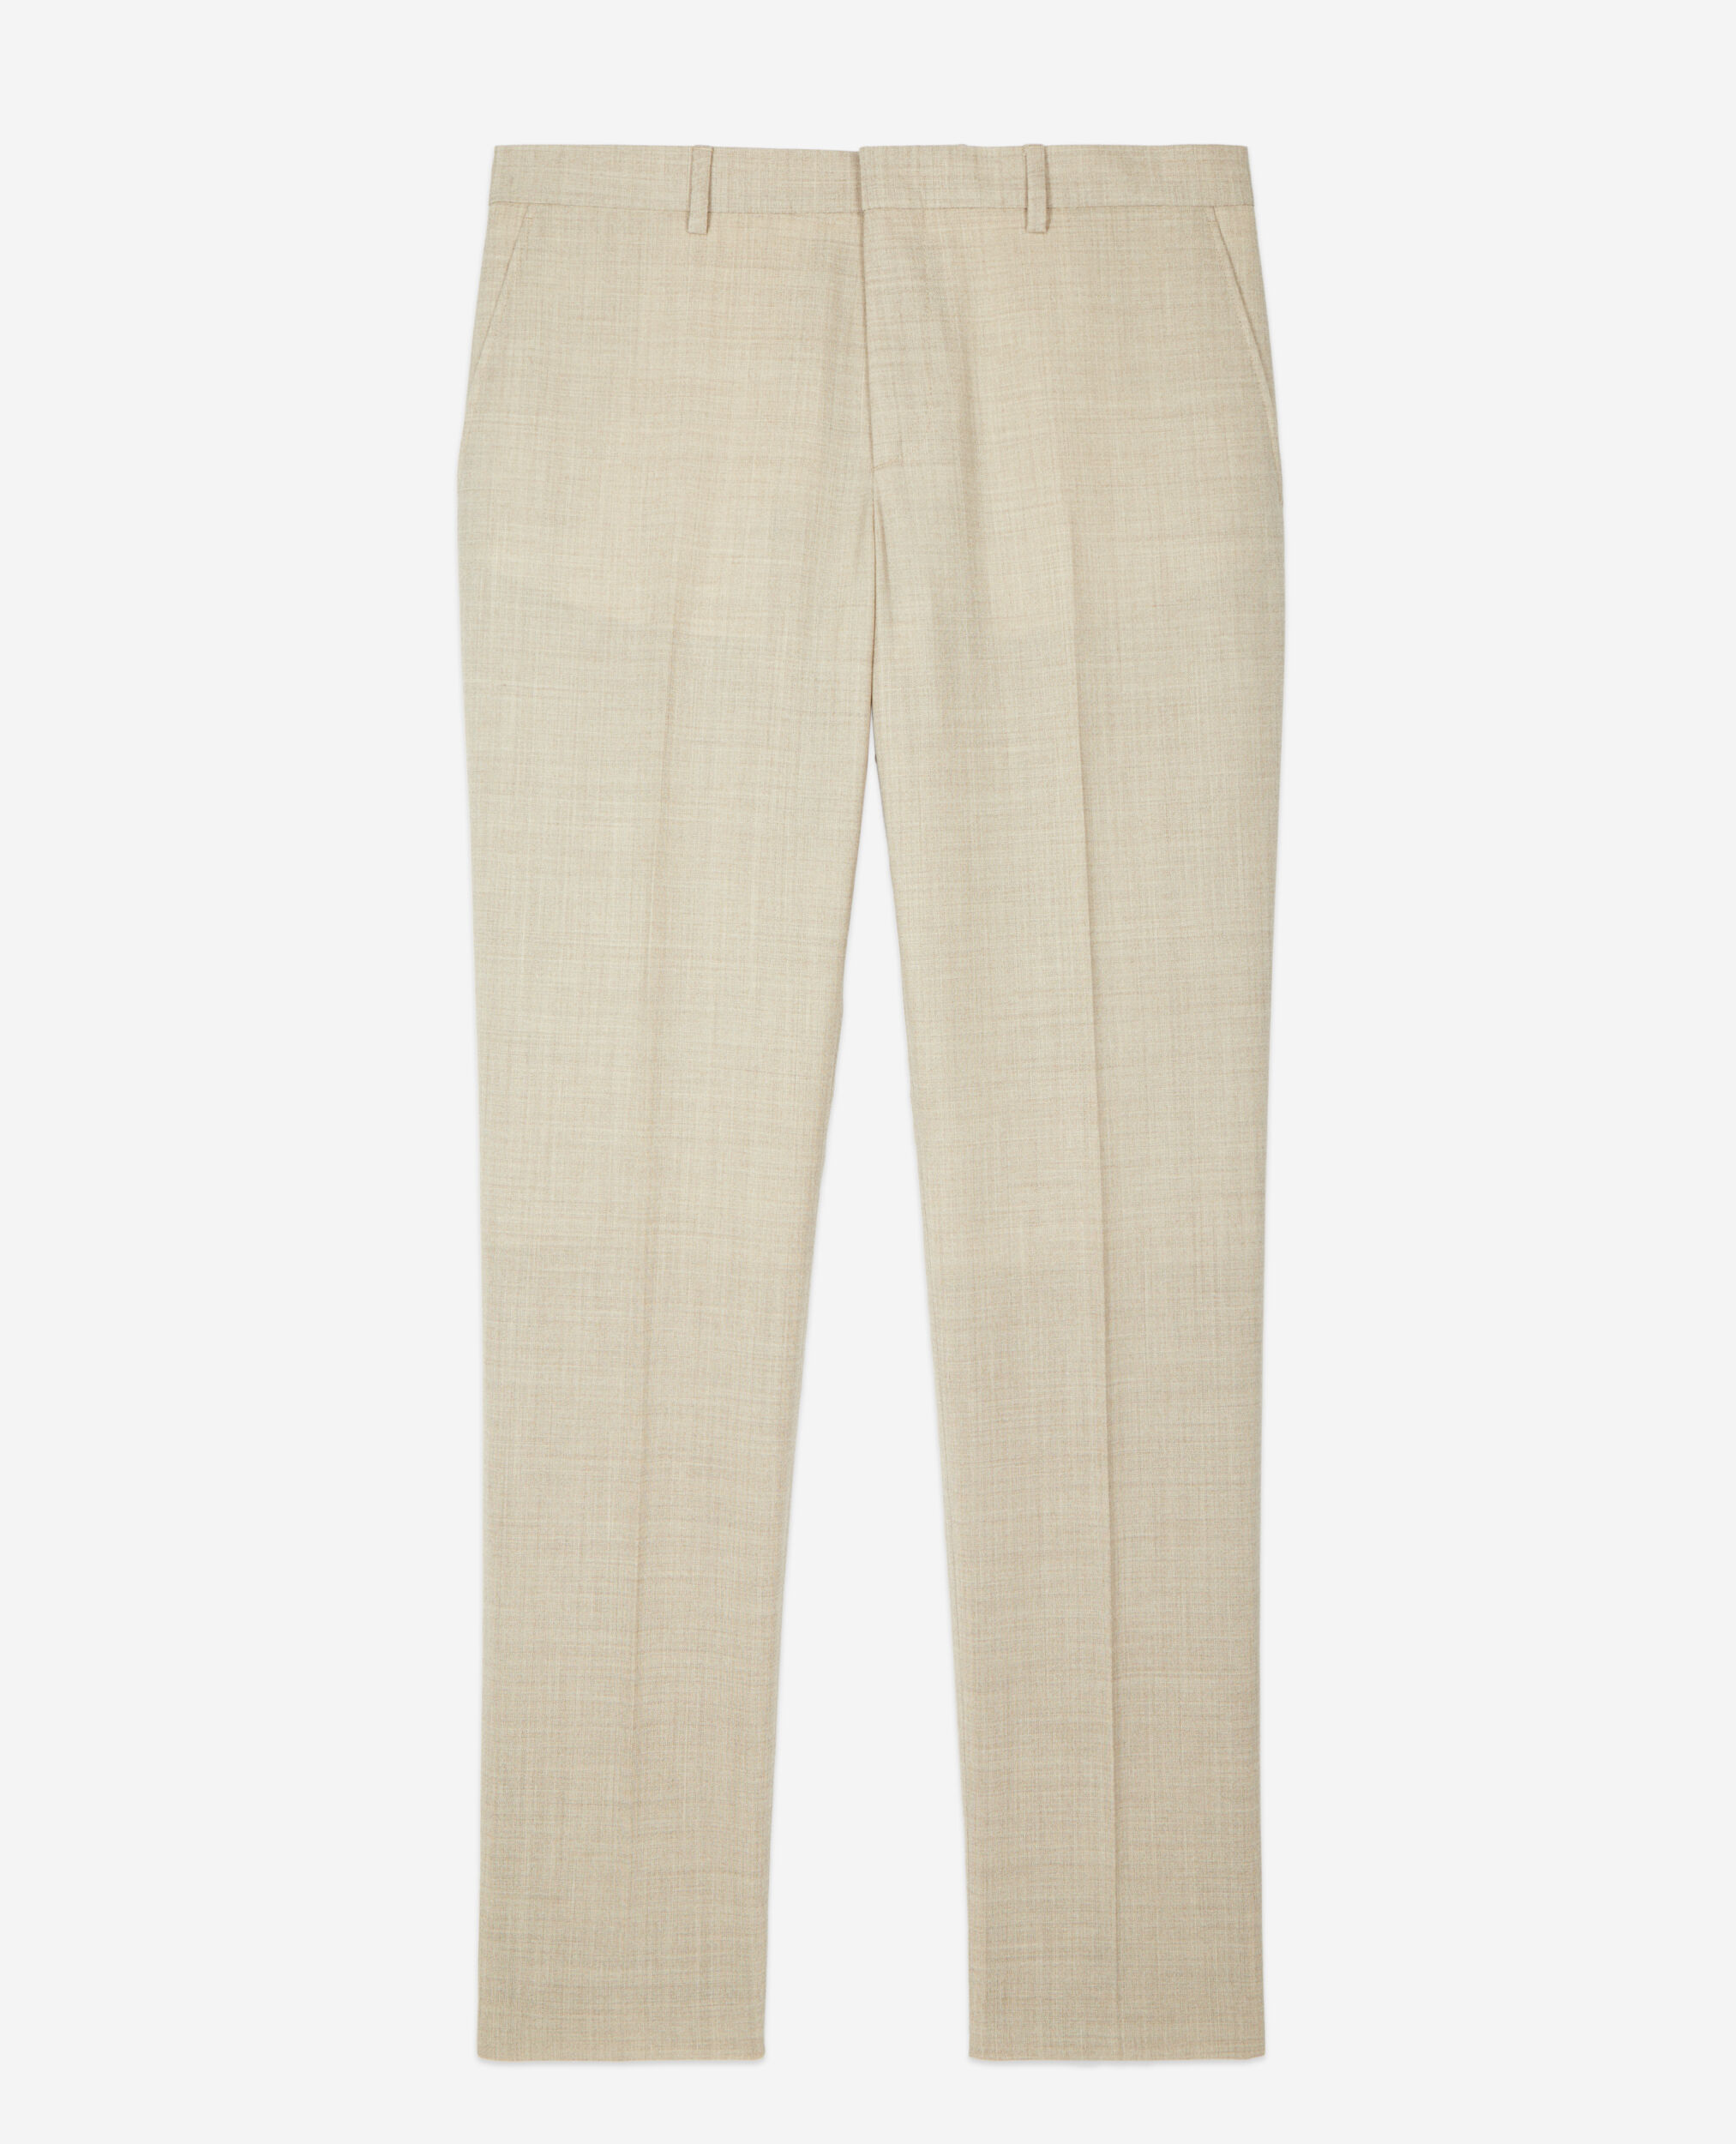 Pantalón traje beige lana, BEIGE, hi-res image number null